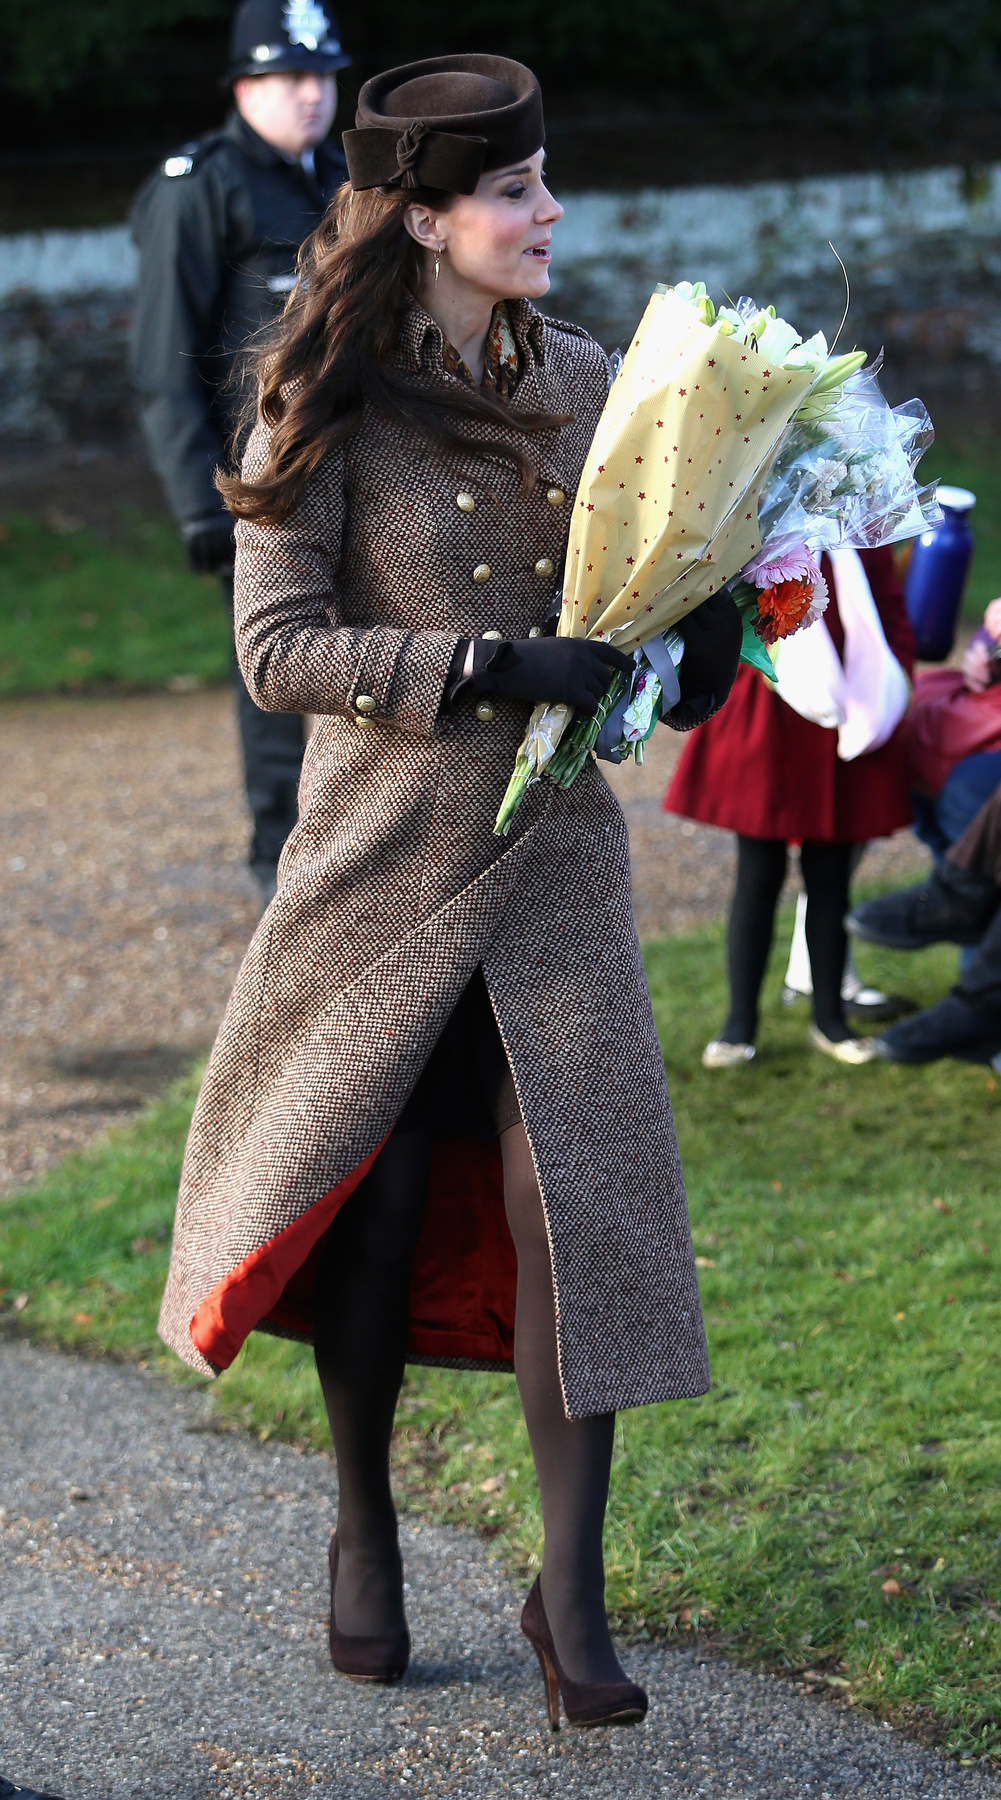 Moloh kabát, 685 font, 2012 ősz-tél. A hercegné 2014 karácsonyán lejtett el benne a Sandringham-i templomba.